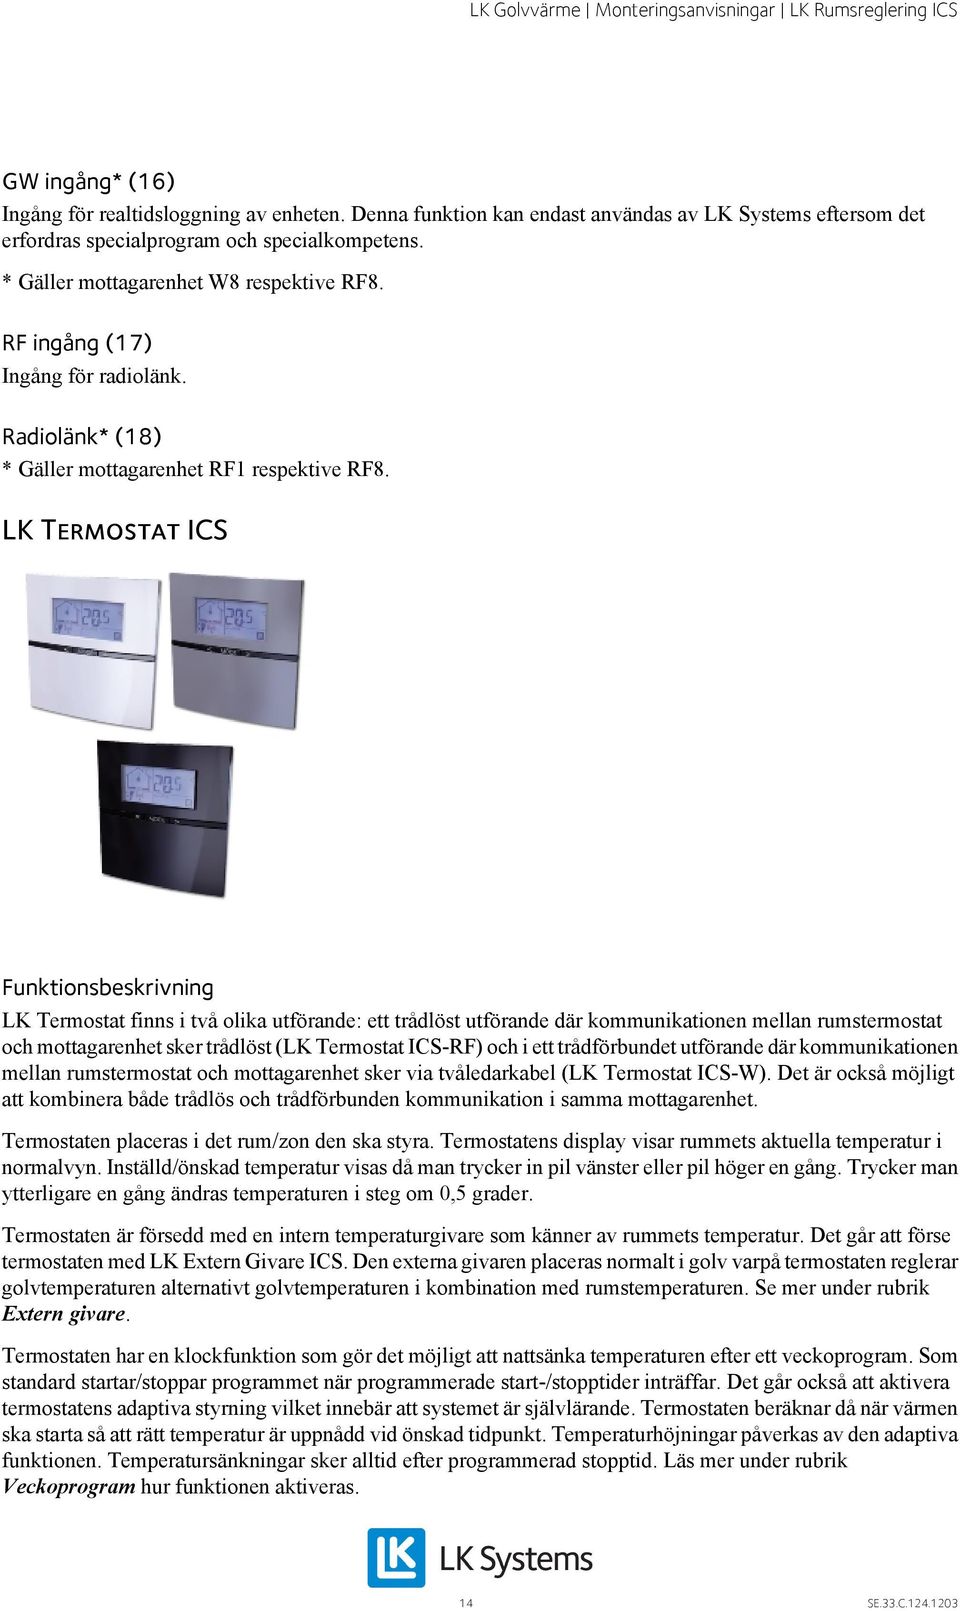 LK Rumsreglering ICS. Utförande - PDF Download